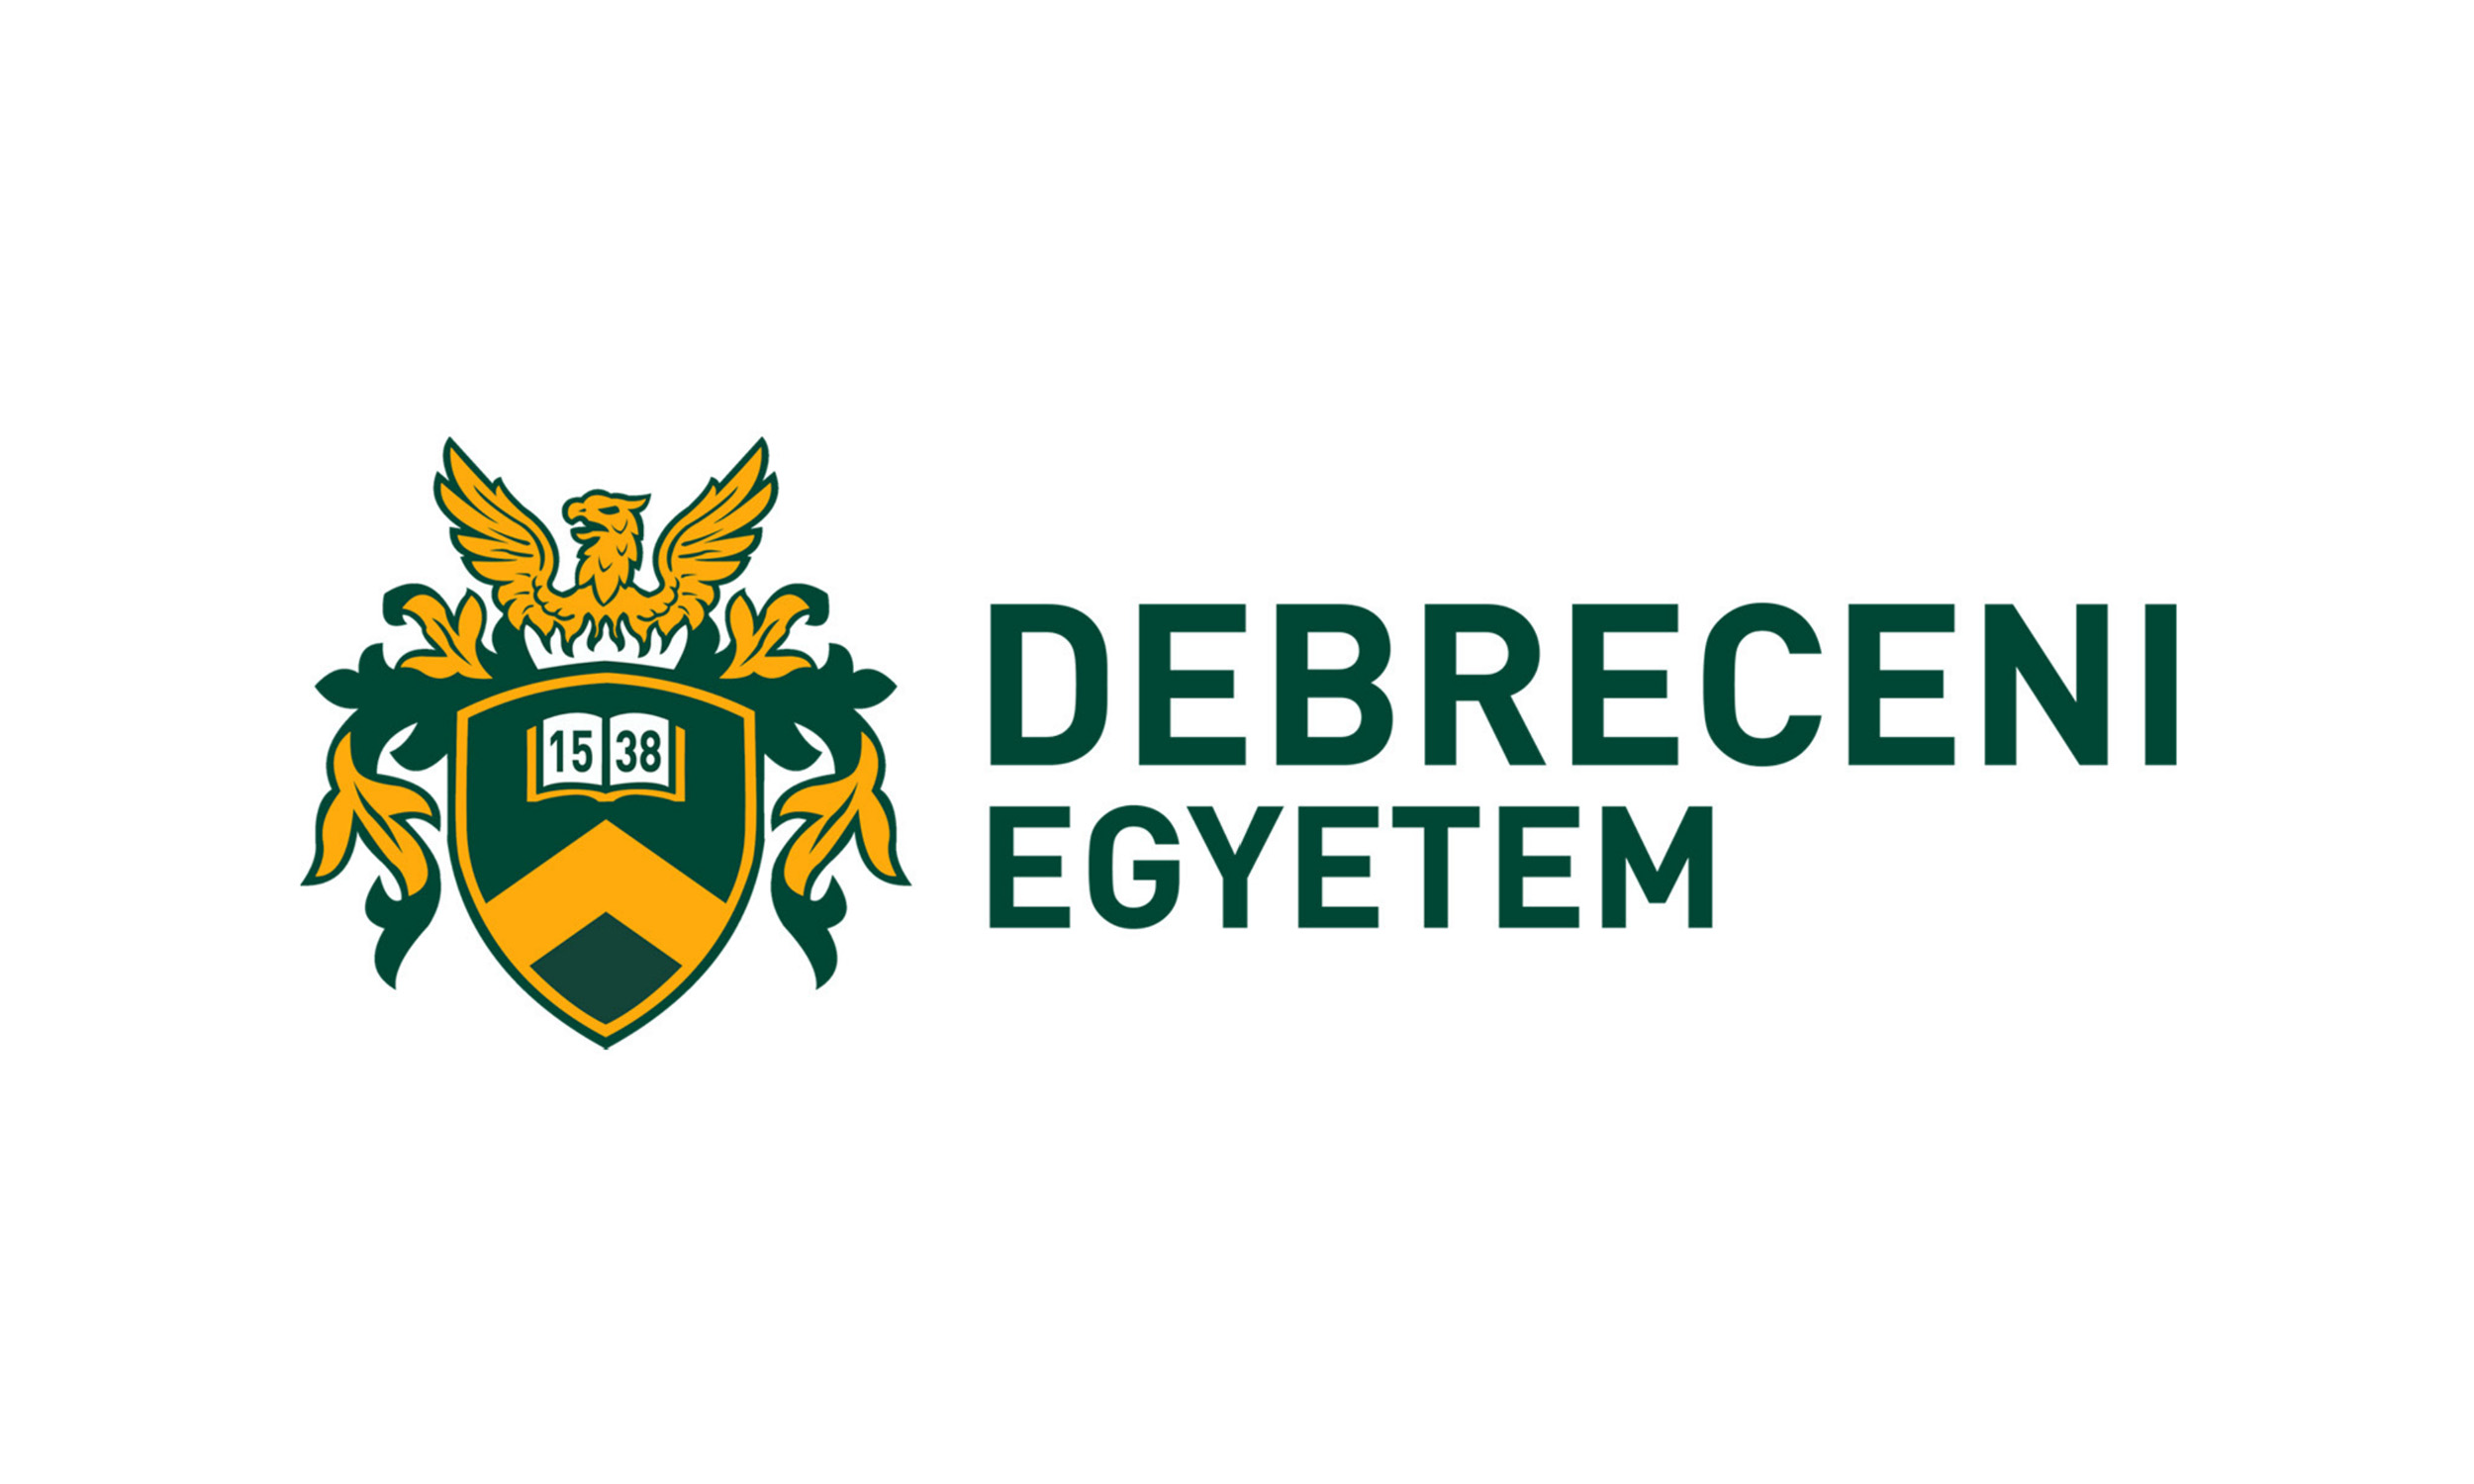 A Debreceni Egyetem logója